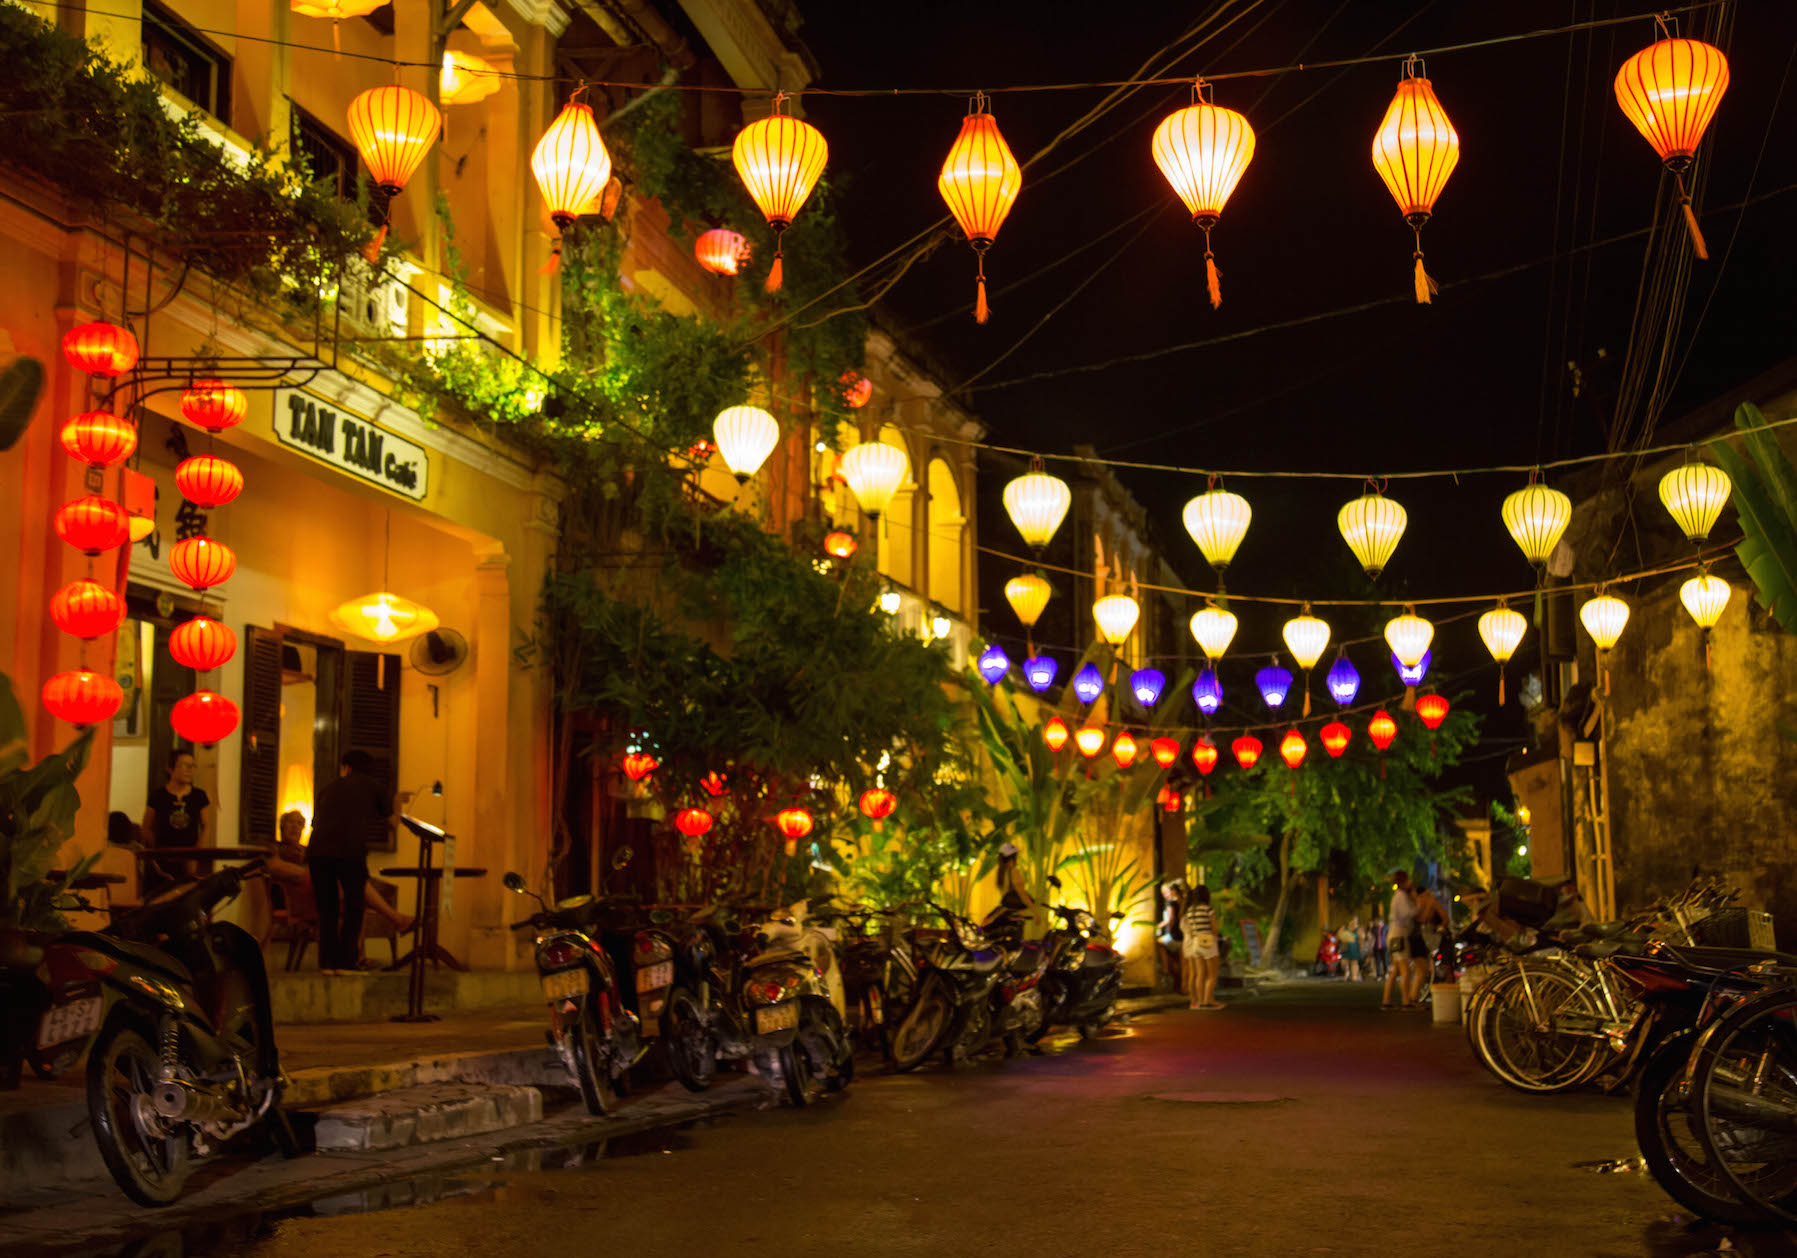 Hoi An – The Venice of Vietnam